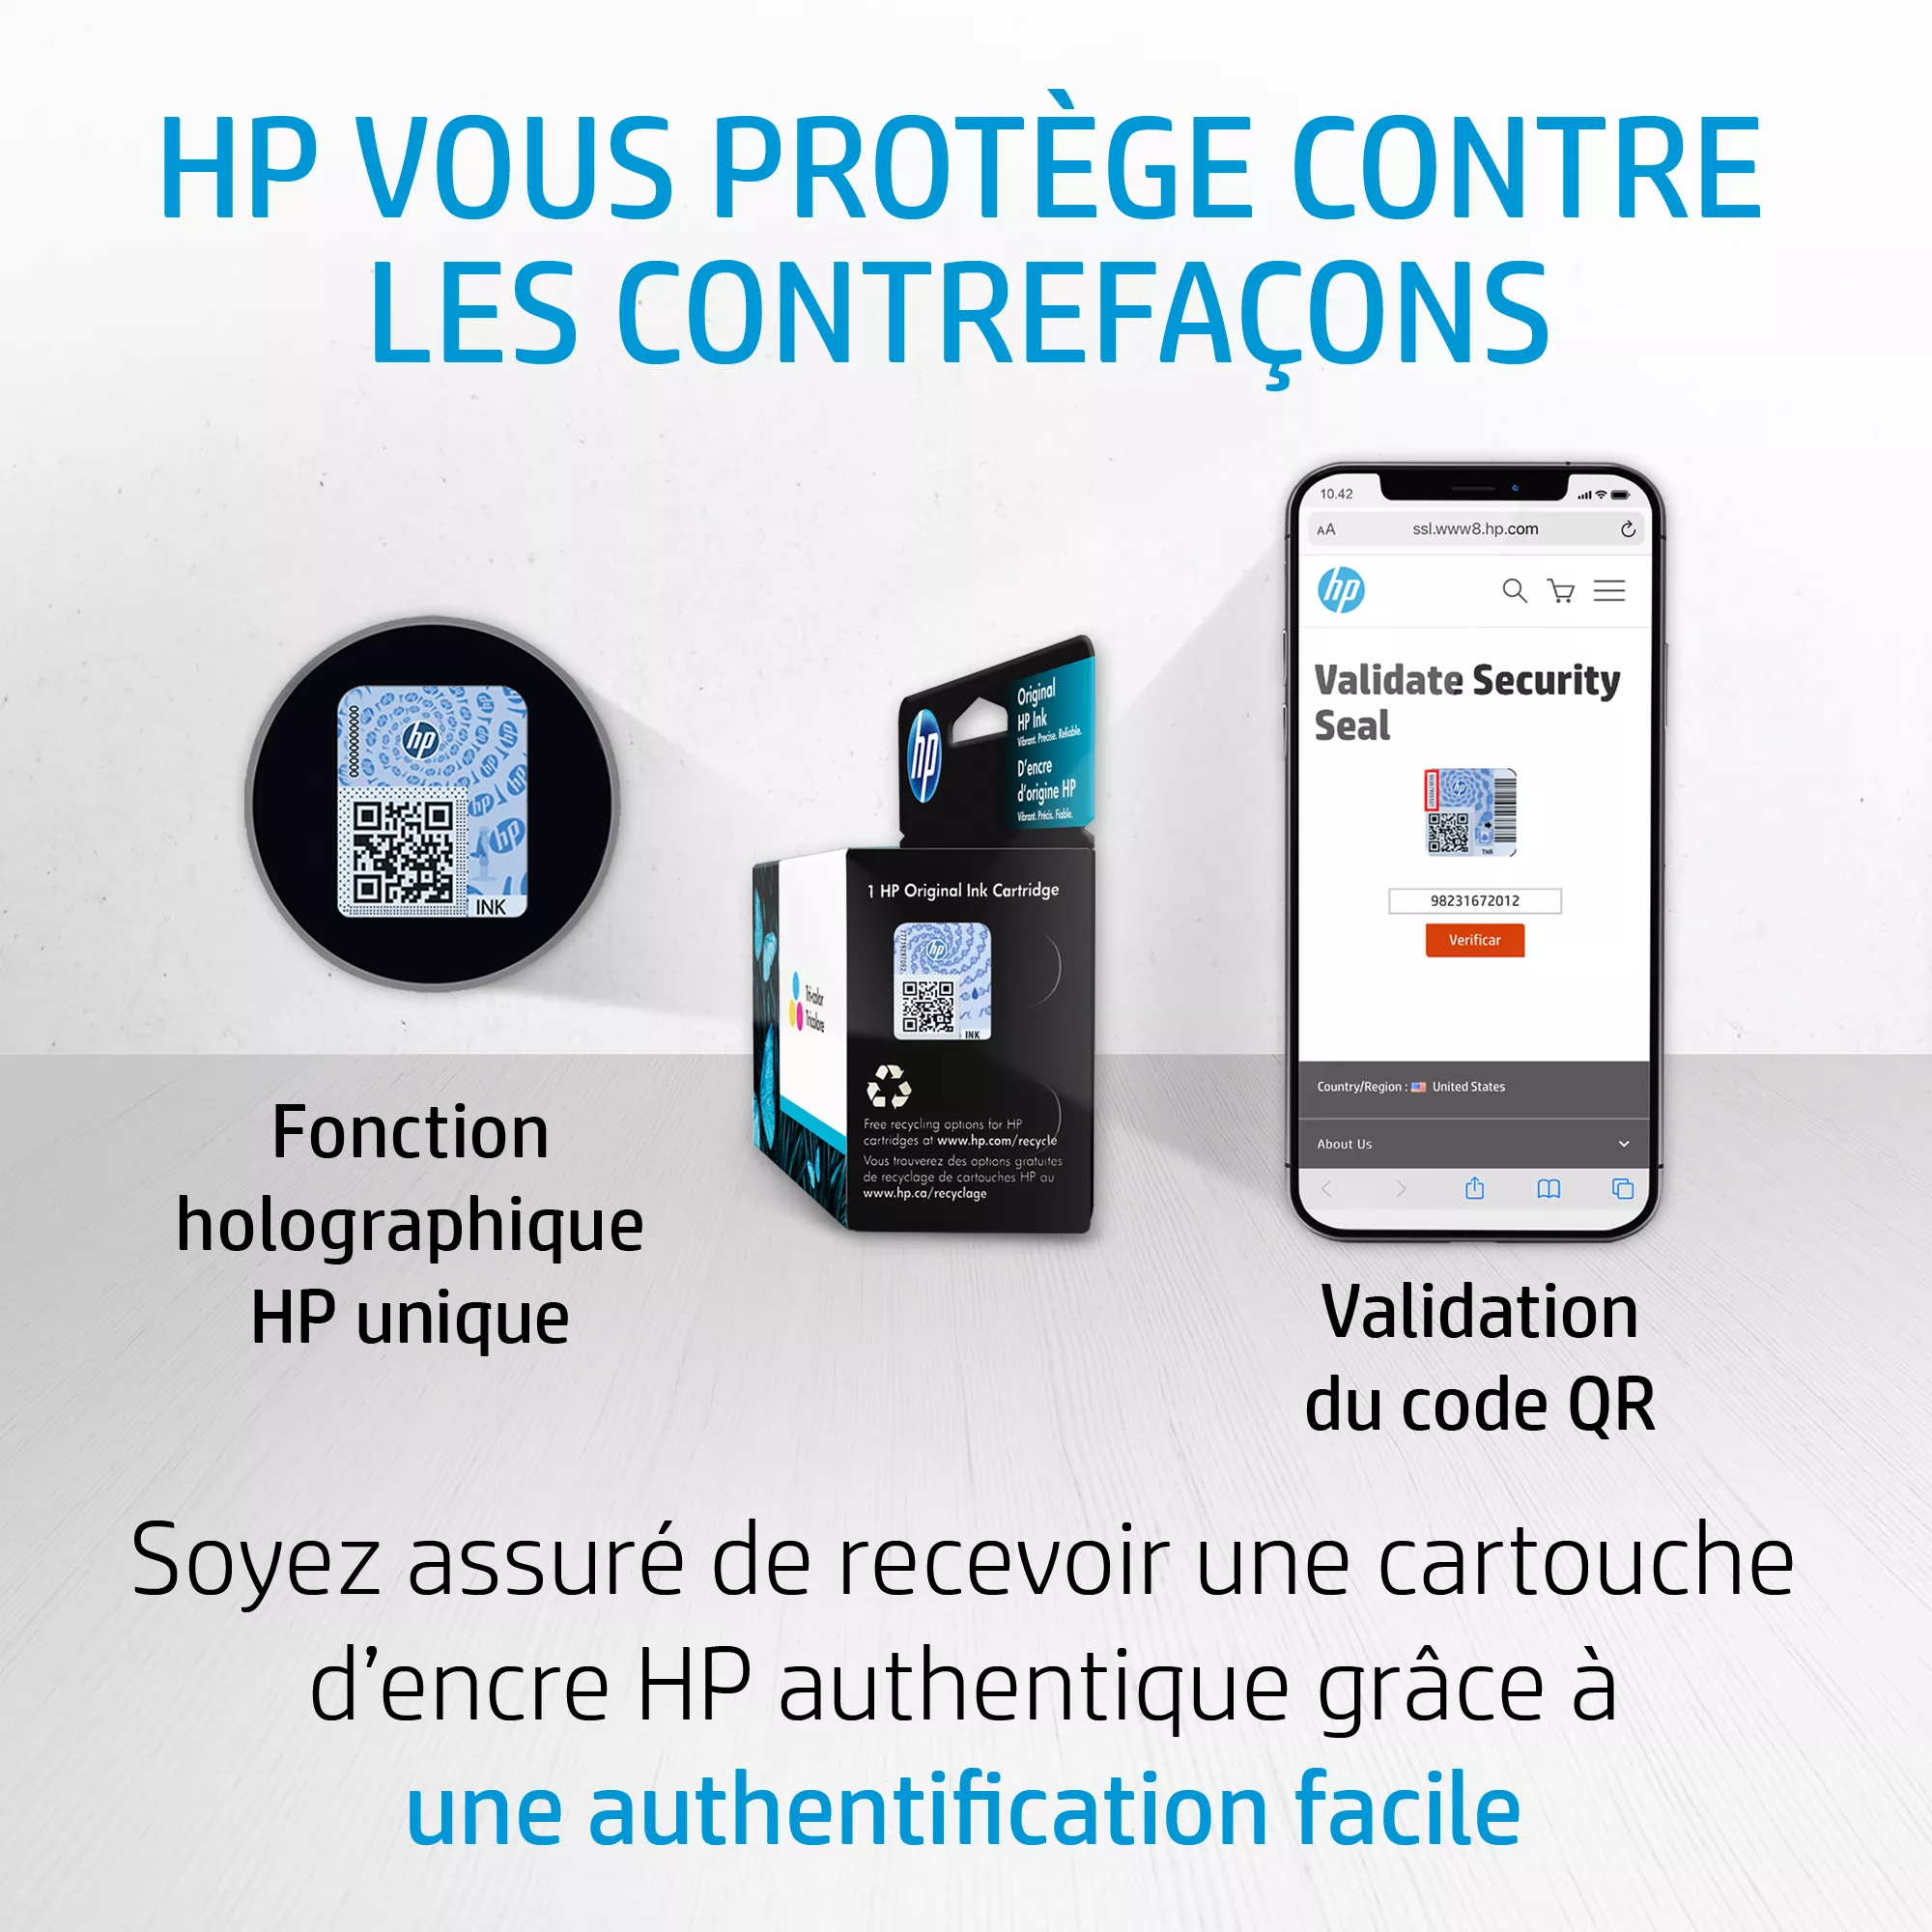 HP 303 Black Ink Cartridge HP - visuel 1 - hello RSE - Conçues pour une fiabilité de pointe